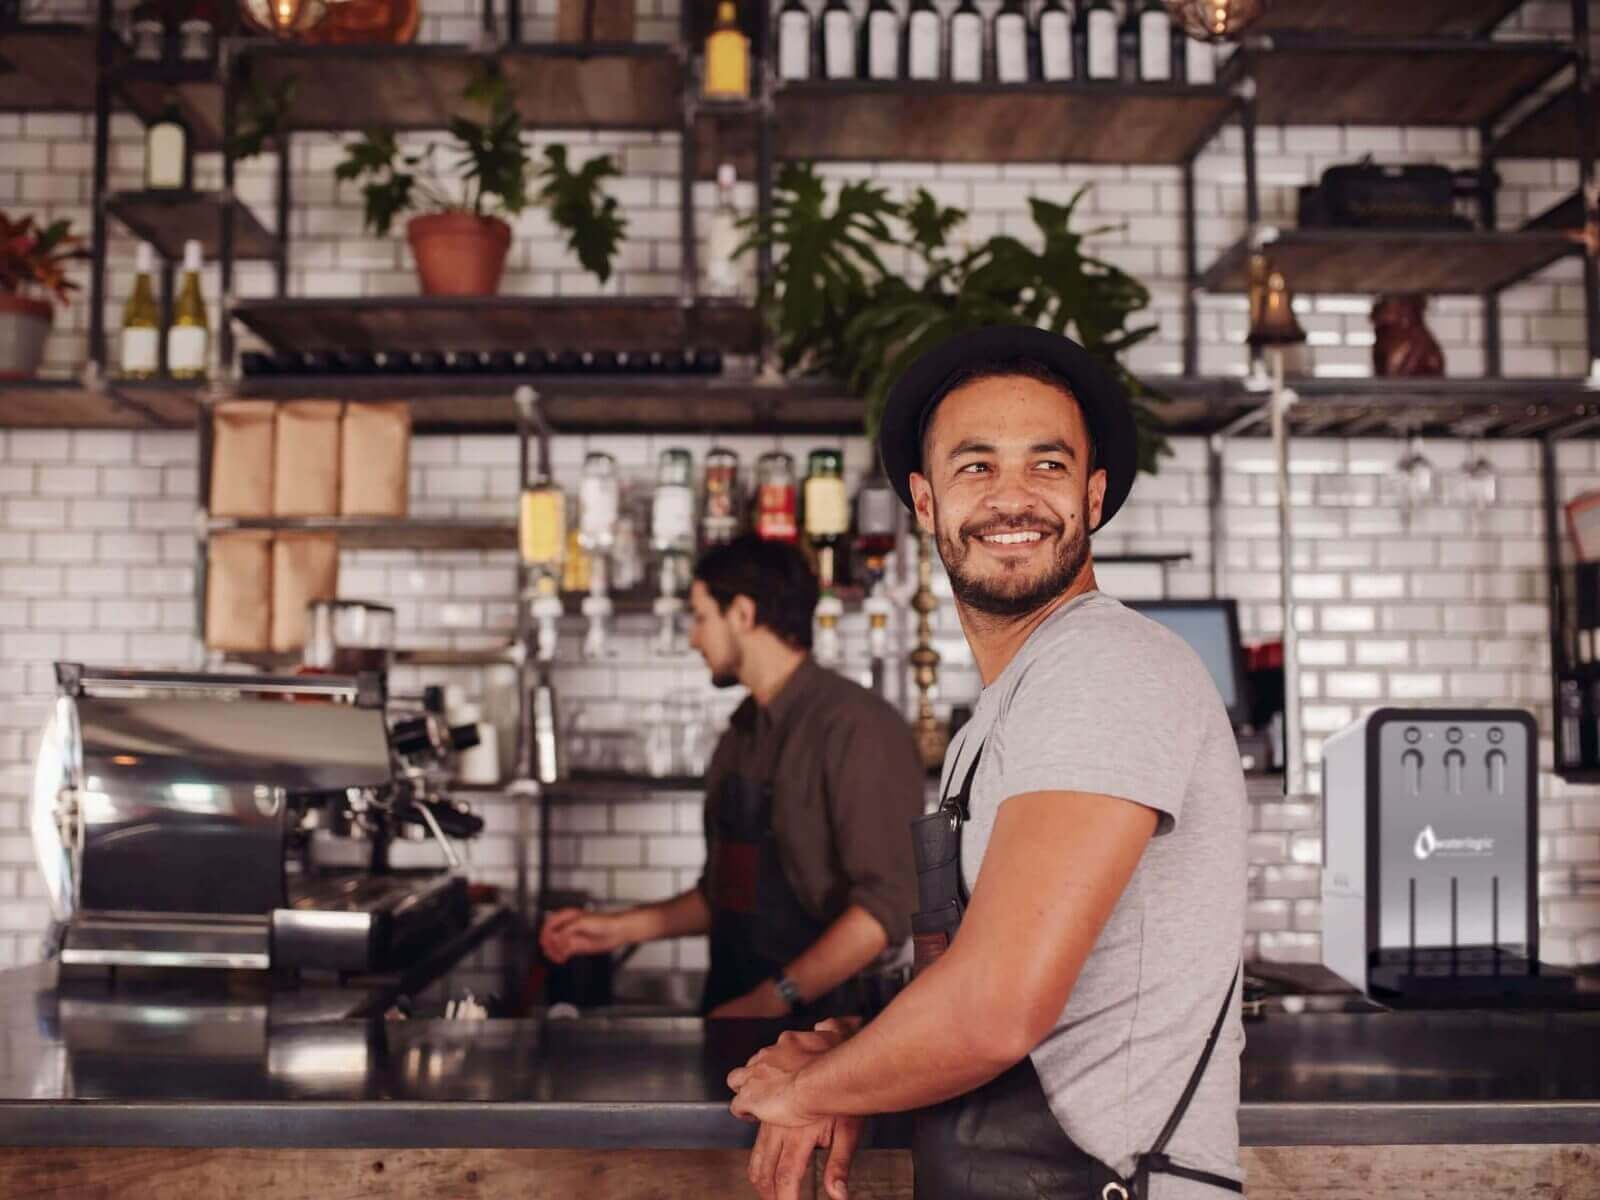 Shop owner. Владелец кофейни. Предприниматель в кофейне. Entrepreneur Coffee shop. Алекс Крук бариста фото.